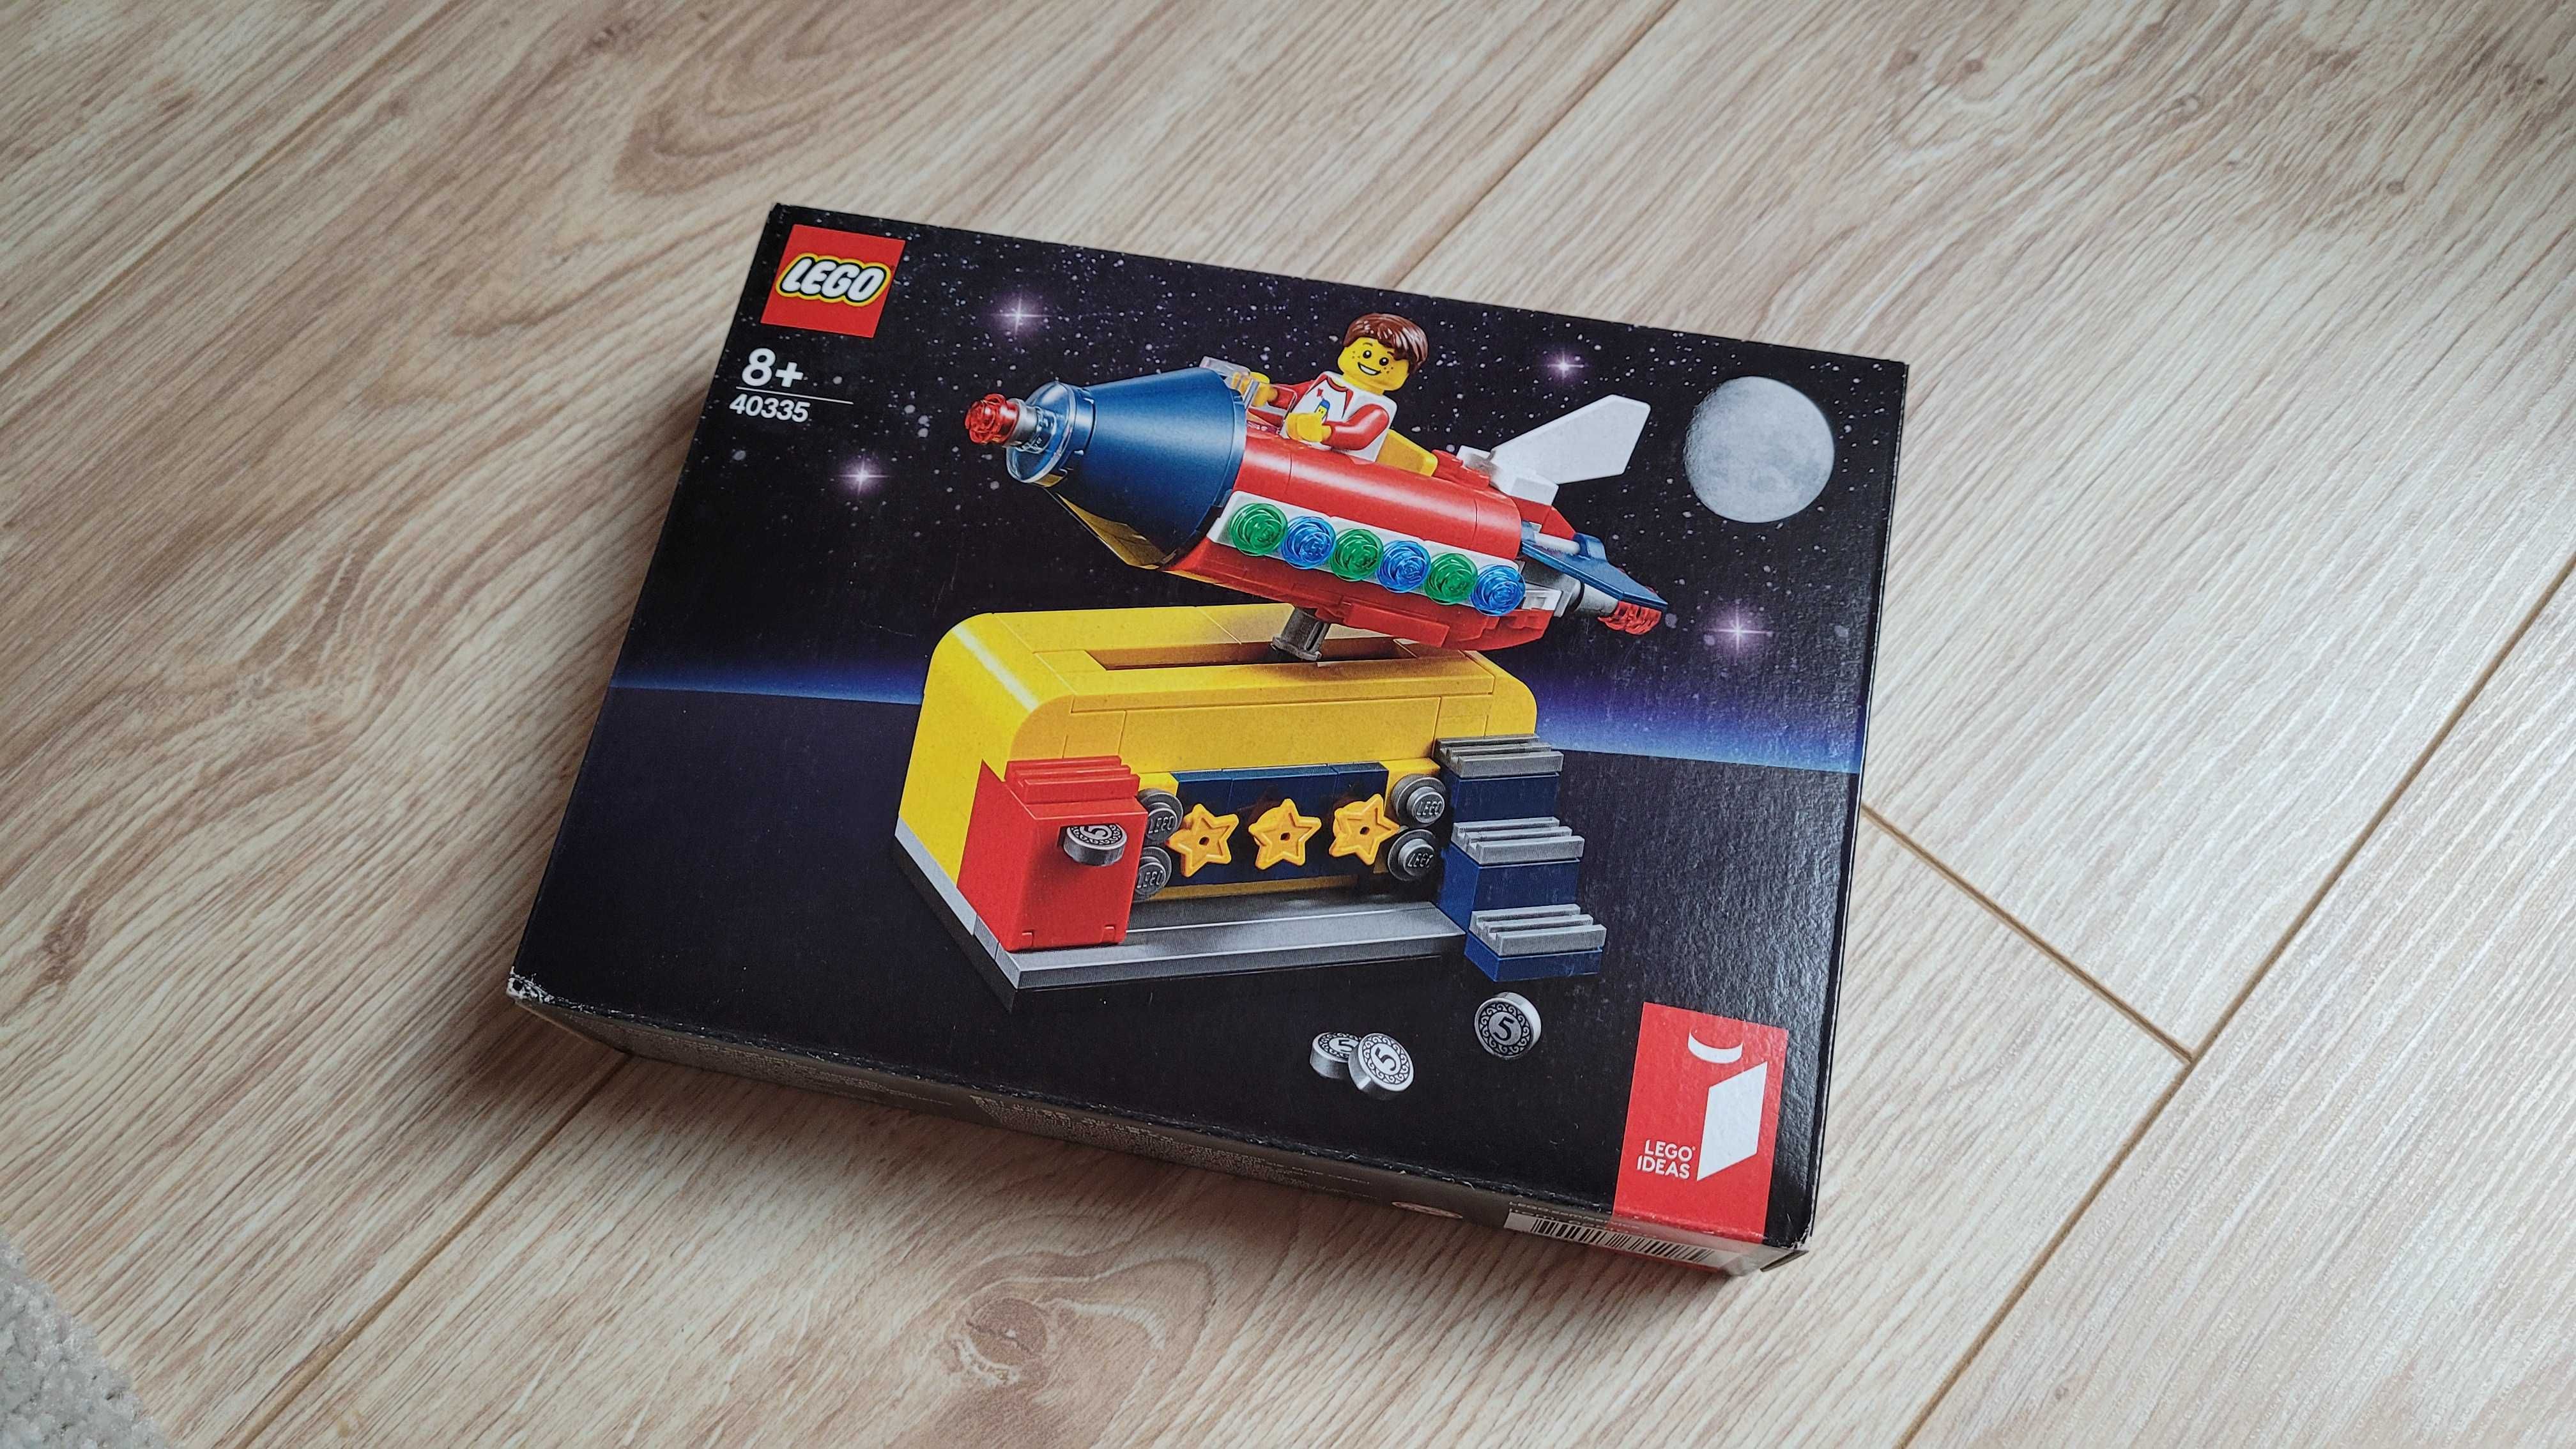 LEGO Ideas 40335 Zabawkowa rakieta kosmiczna